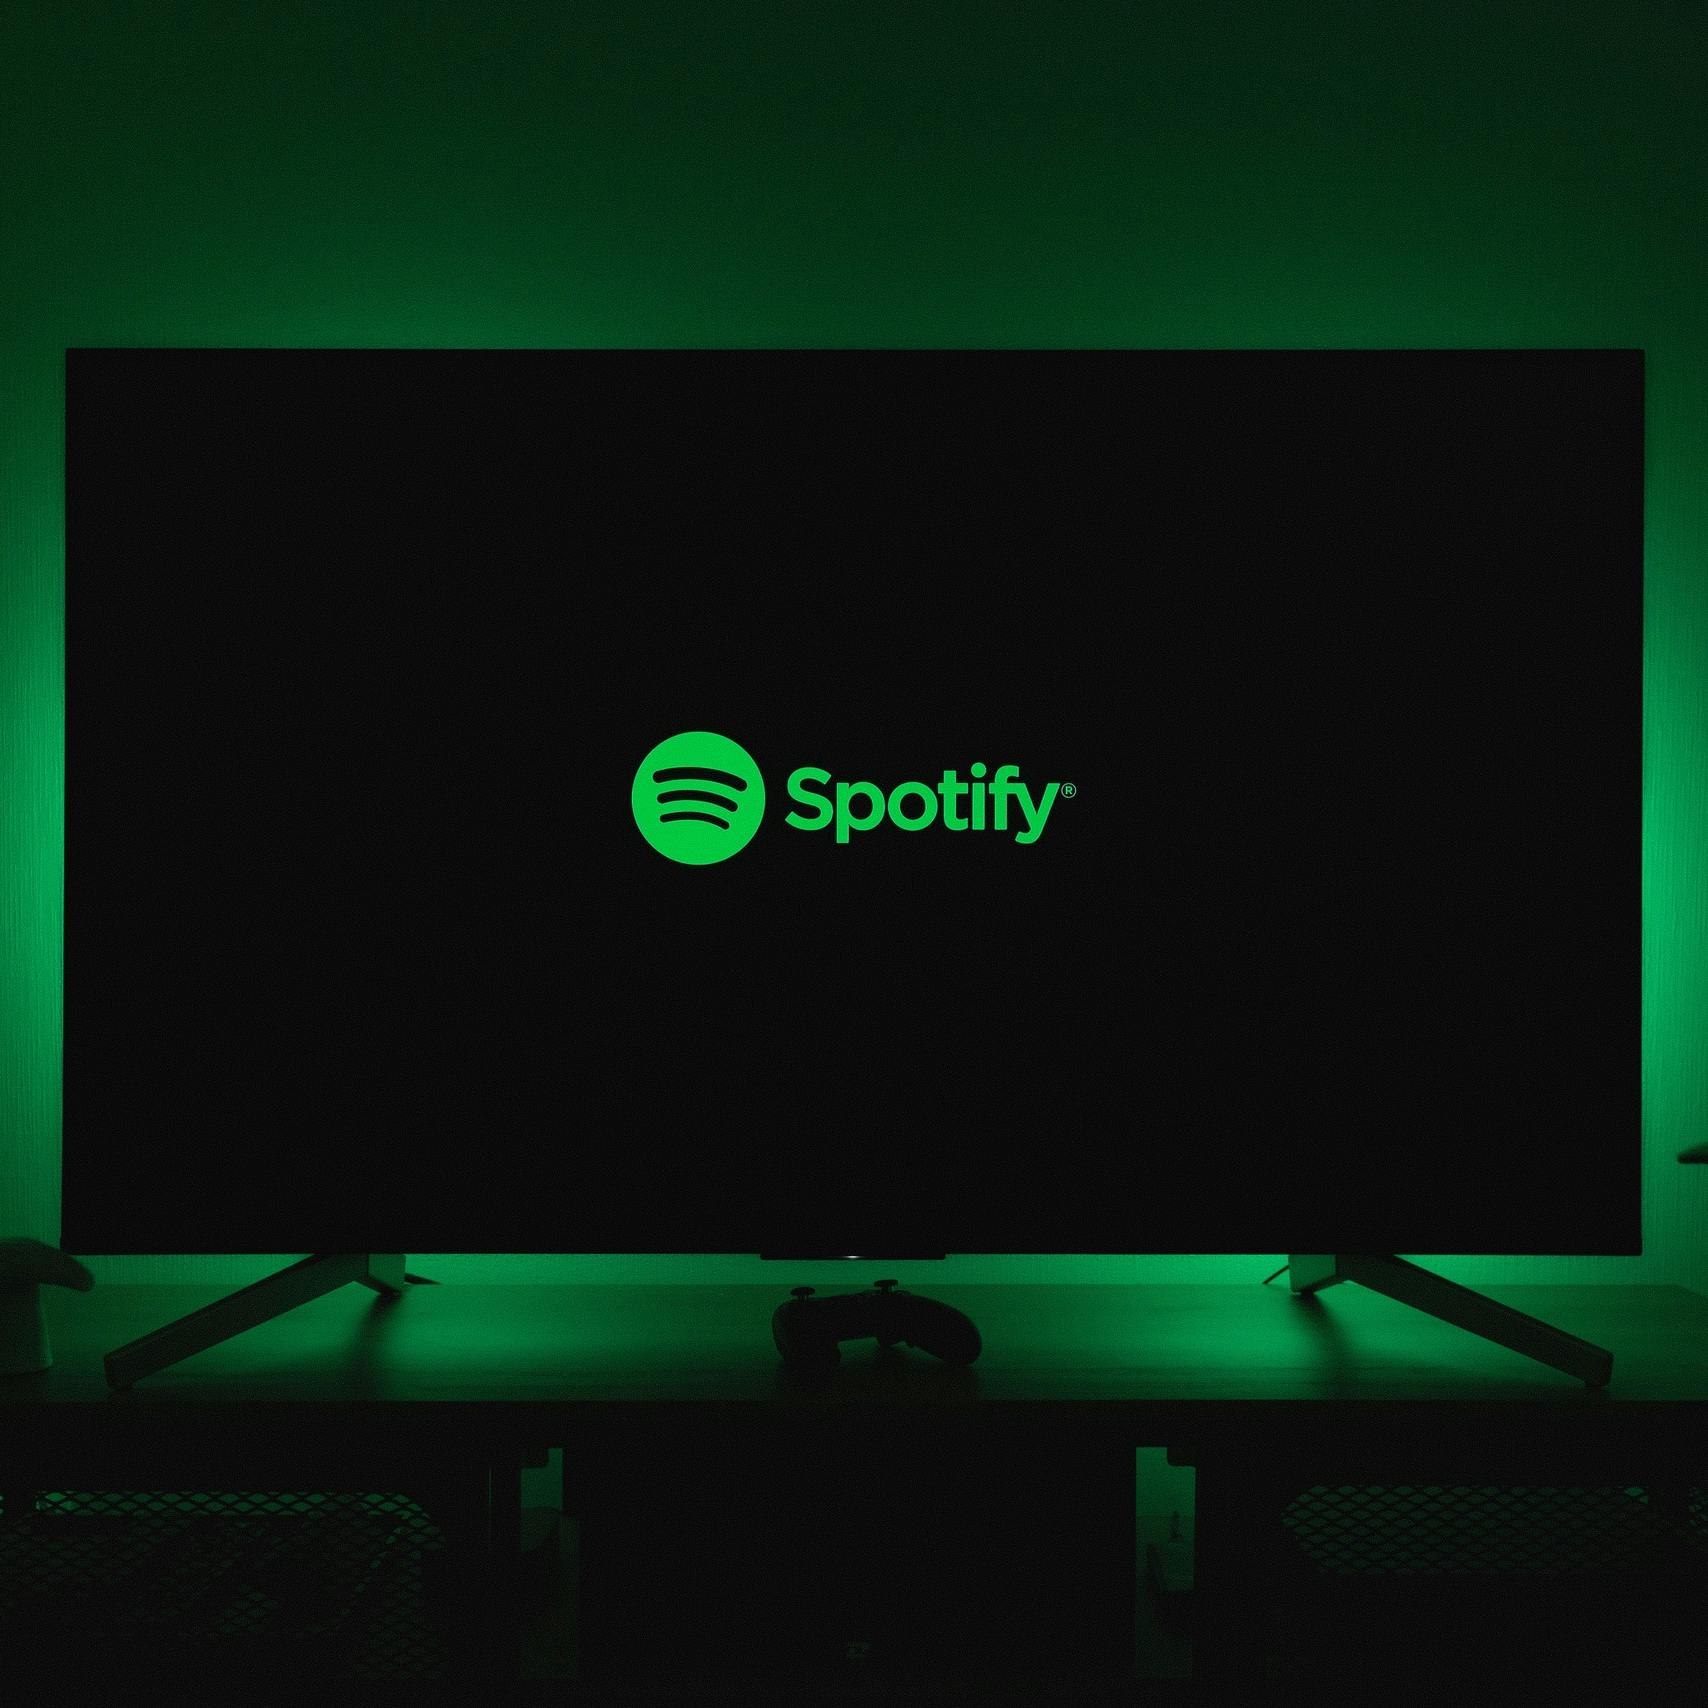 Ook Spotify schrapt honderden banen om kosten te besparen